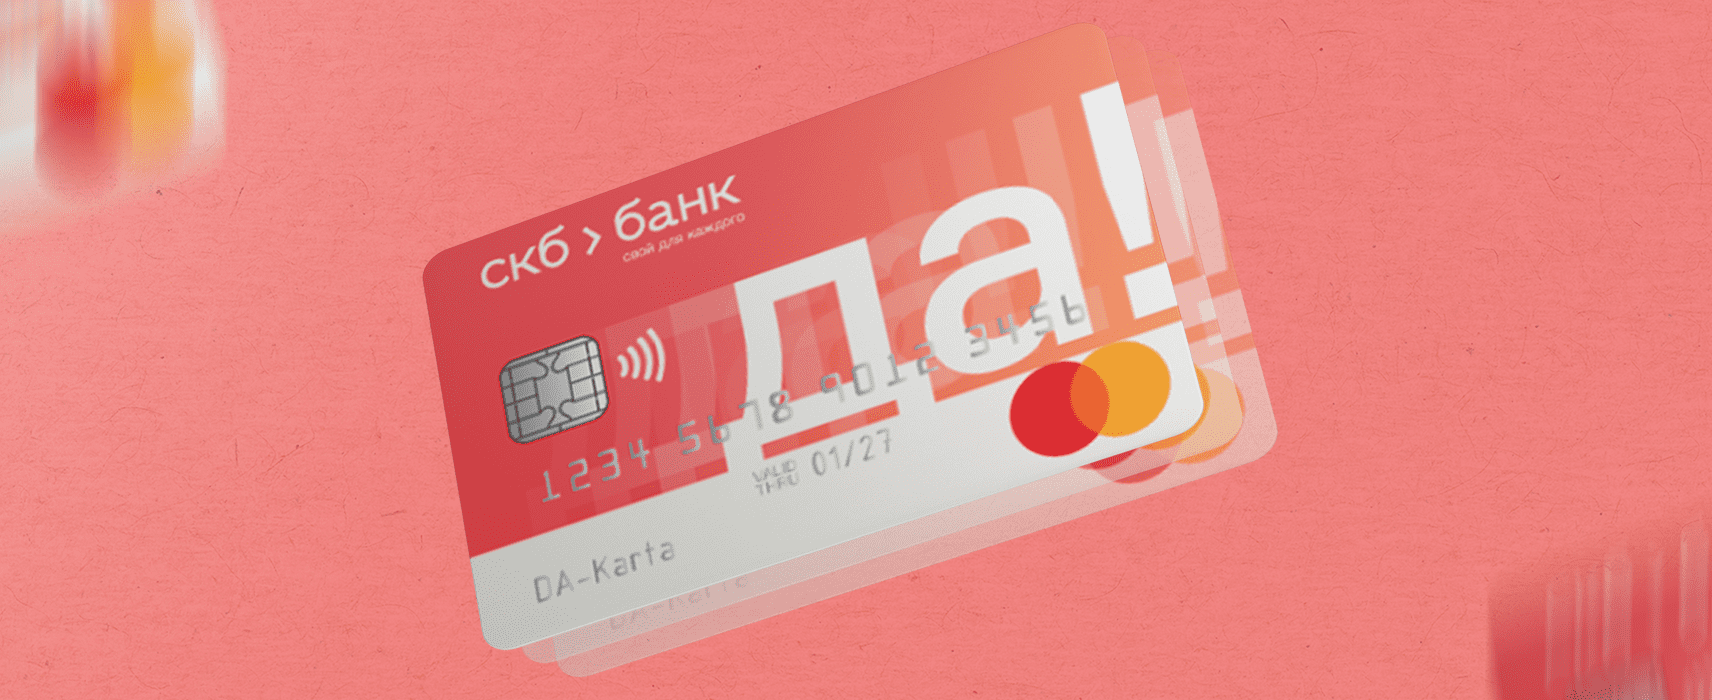 Кредитные карта банк москвы